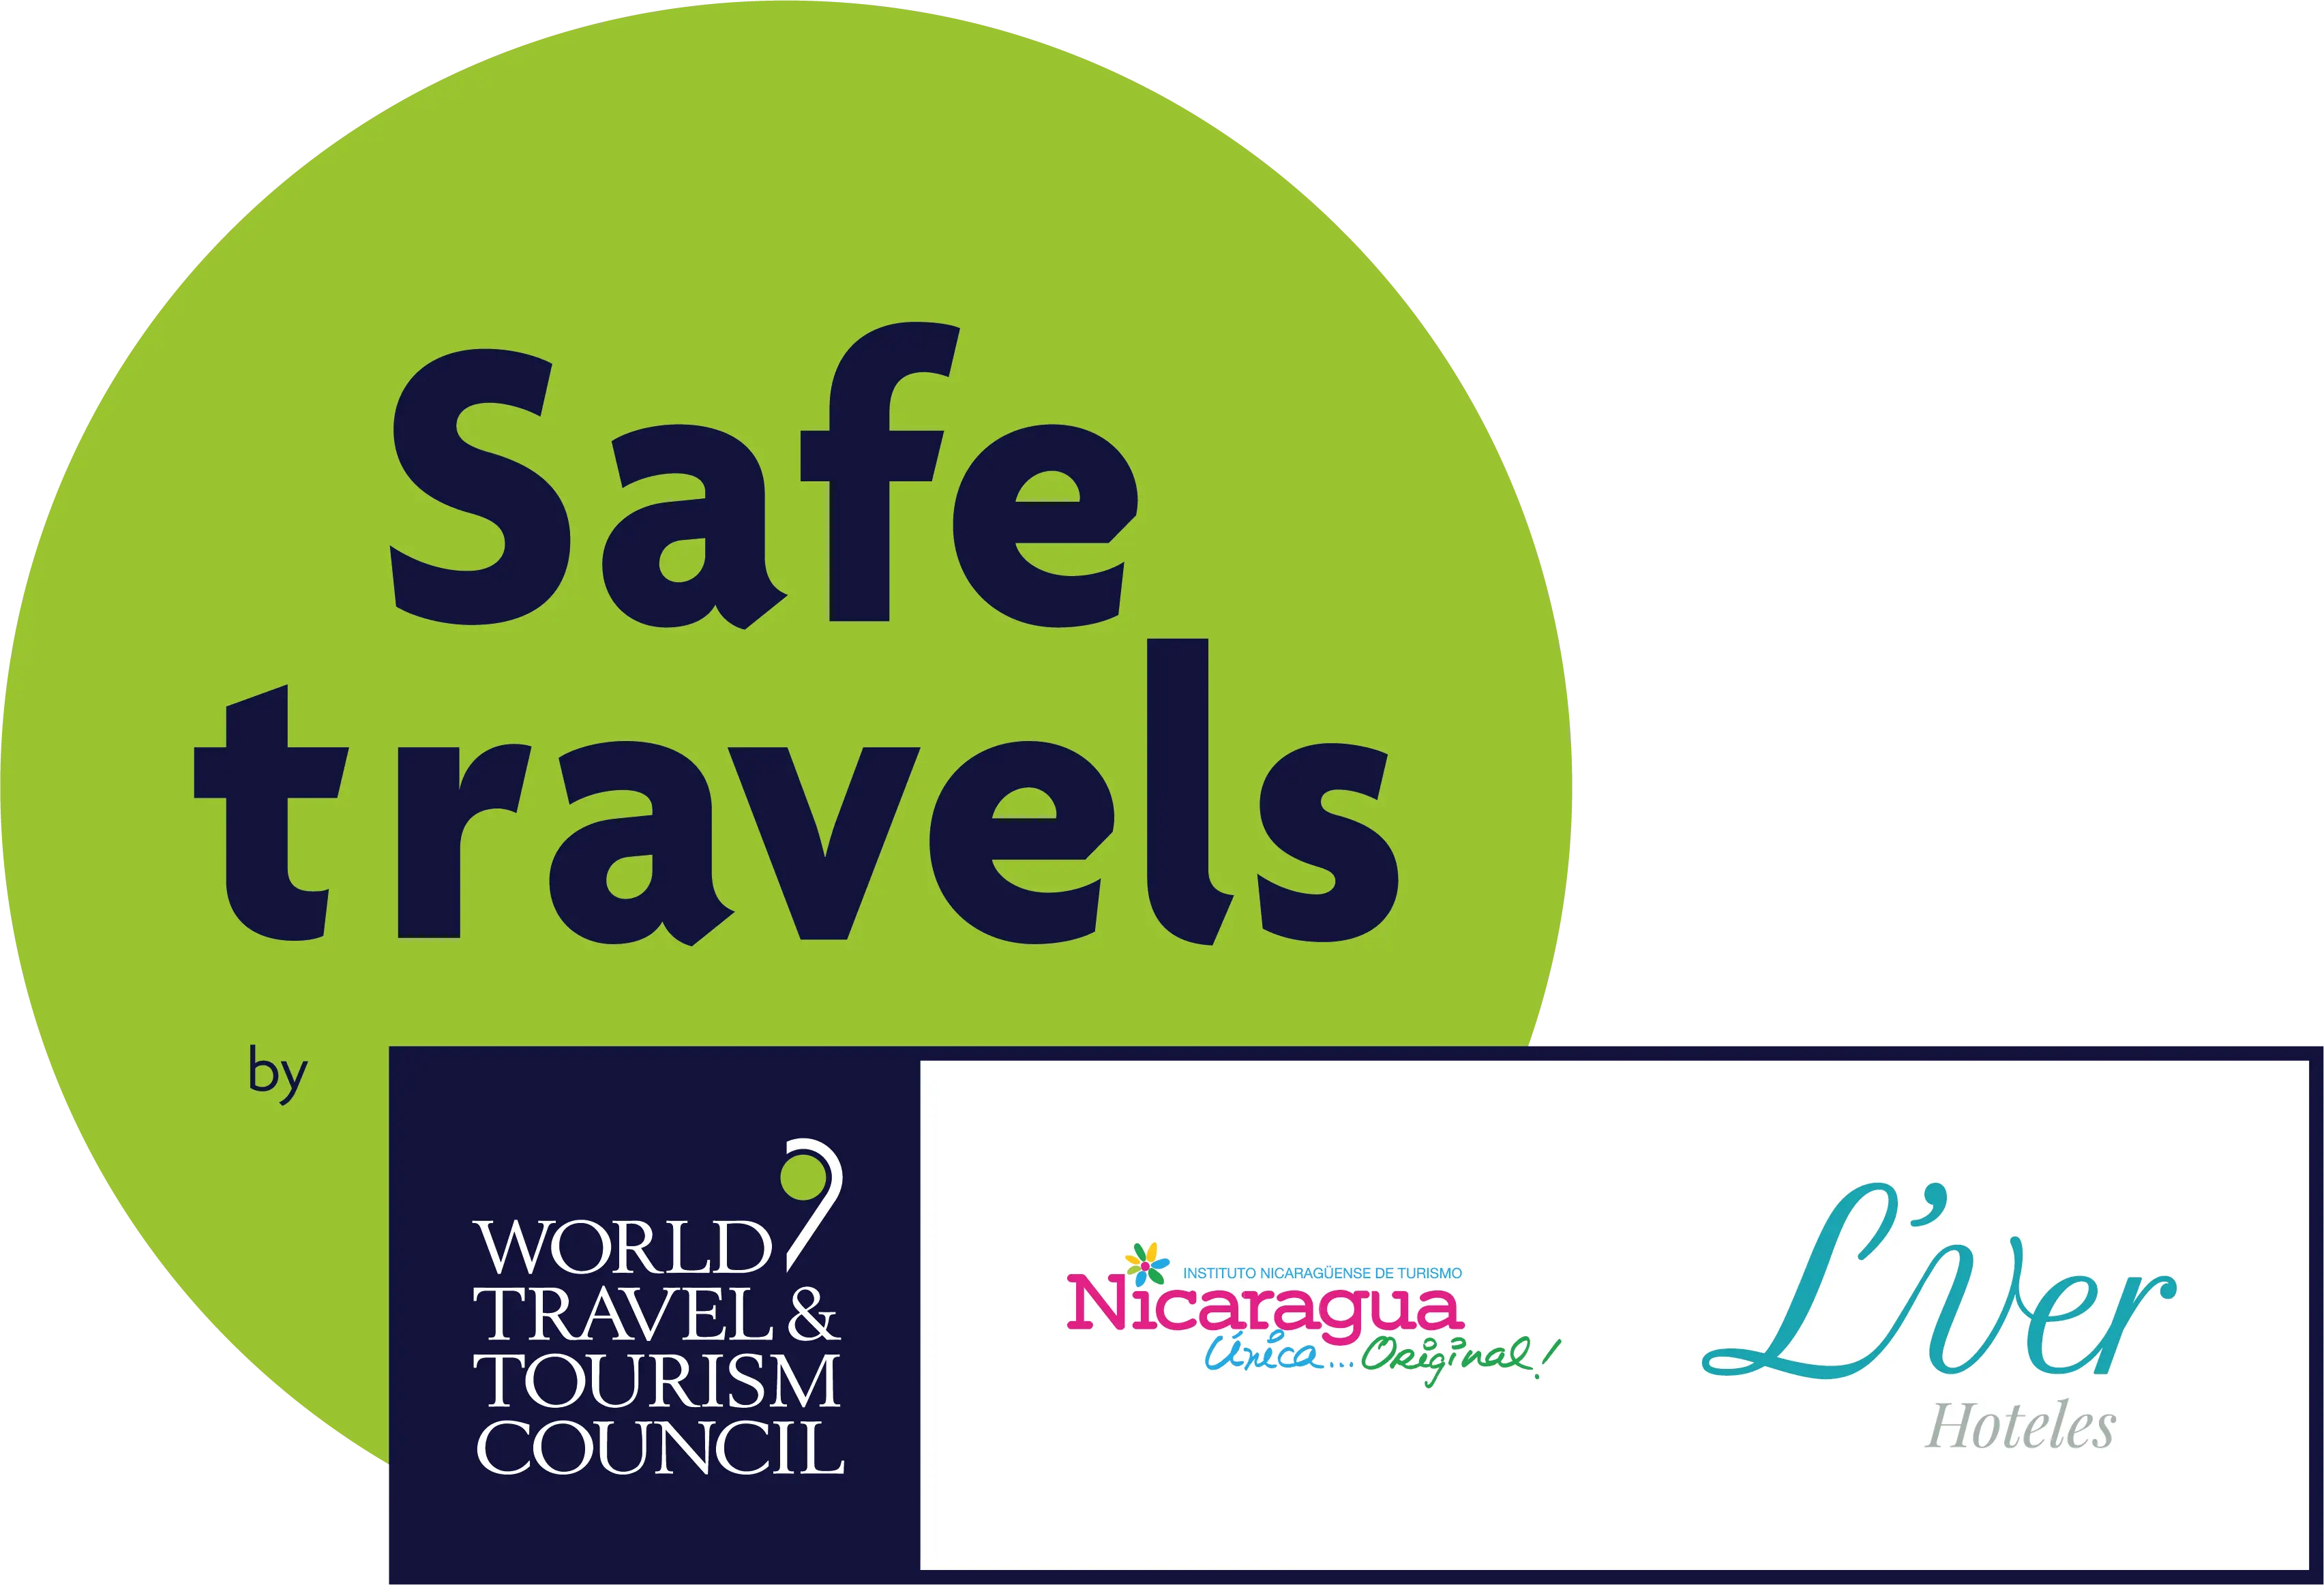 Alójate en L’ver Hoteles, alojamiento con la certificación internacional ‘Safe Travels’ otorgada por el WTTC